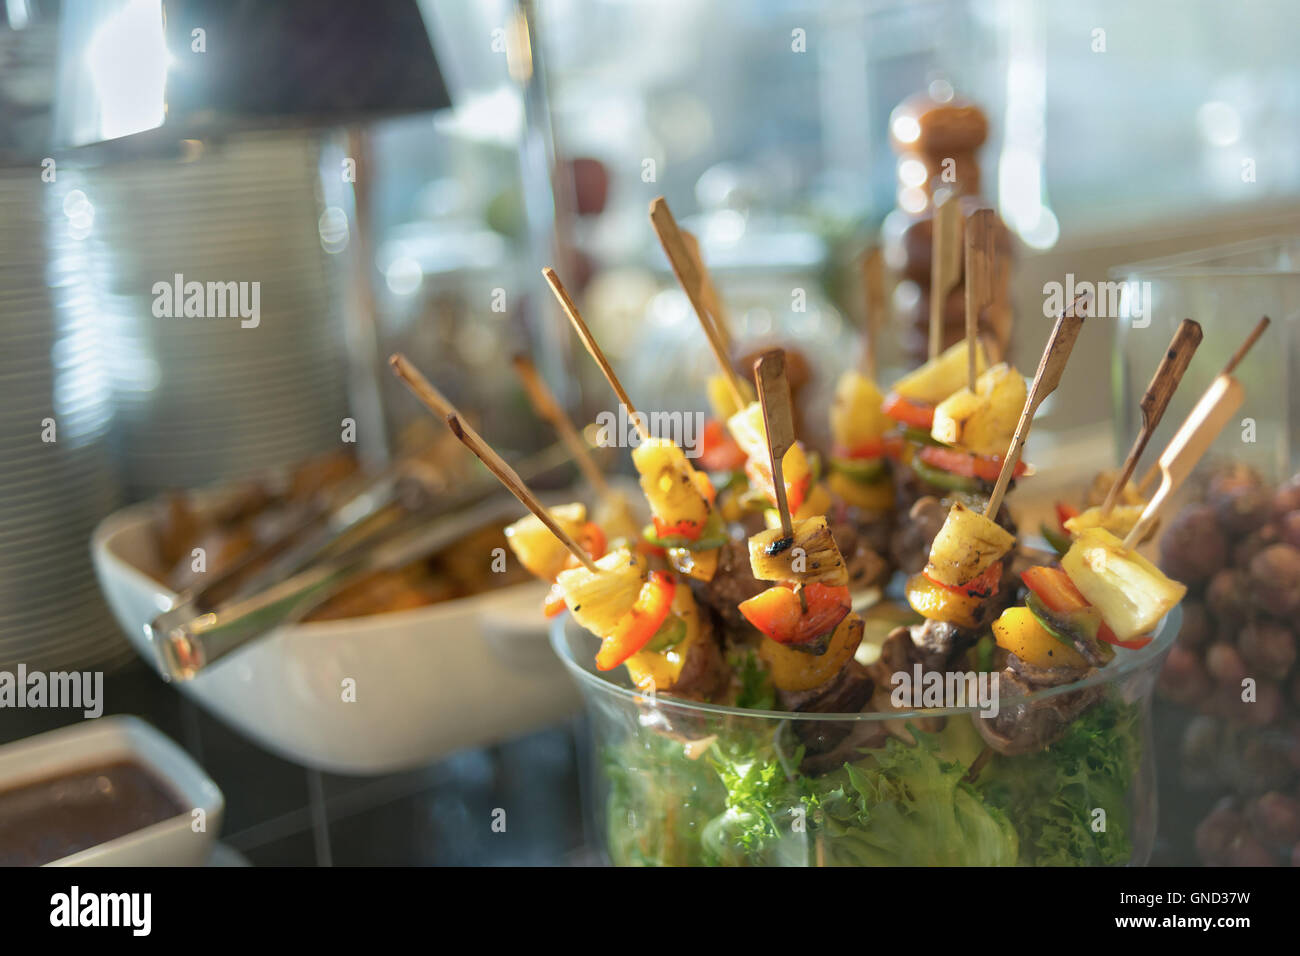 Rindfleisch-Spieße auf ein Becherglas mit gegrillter Ananas, Tomaten und Paprika serviert. Stockfoto